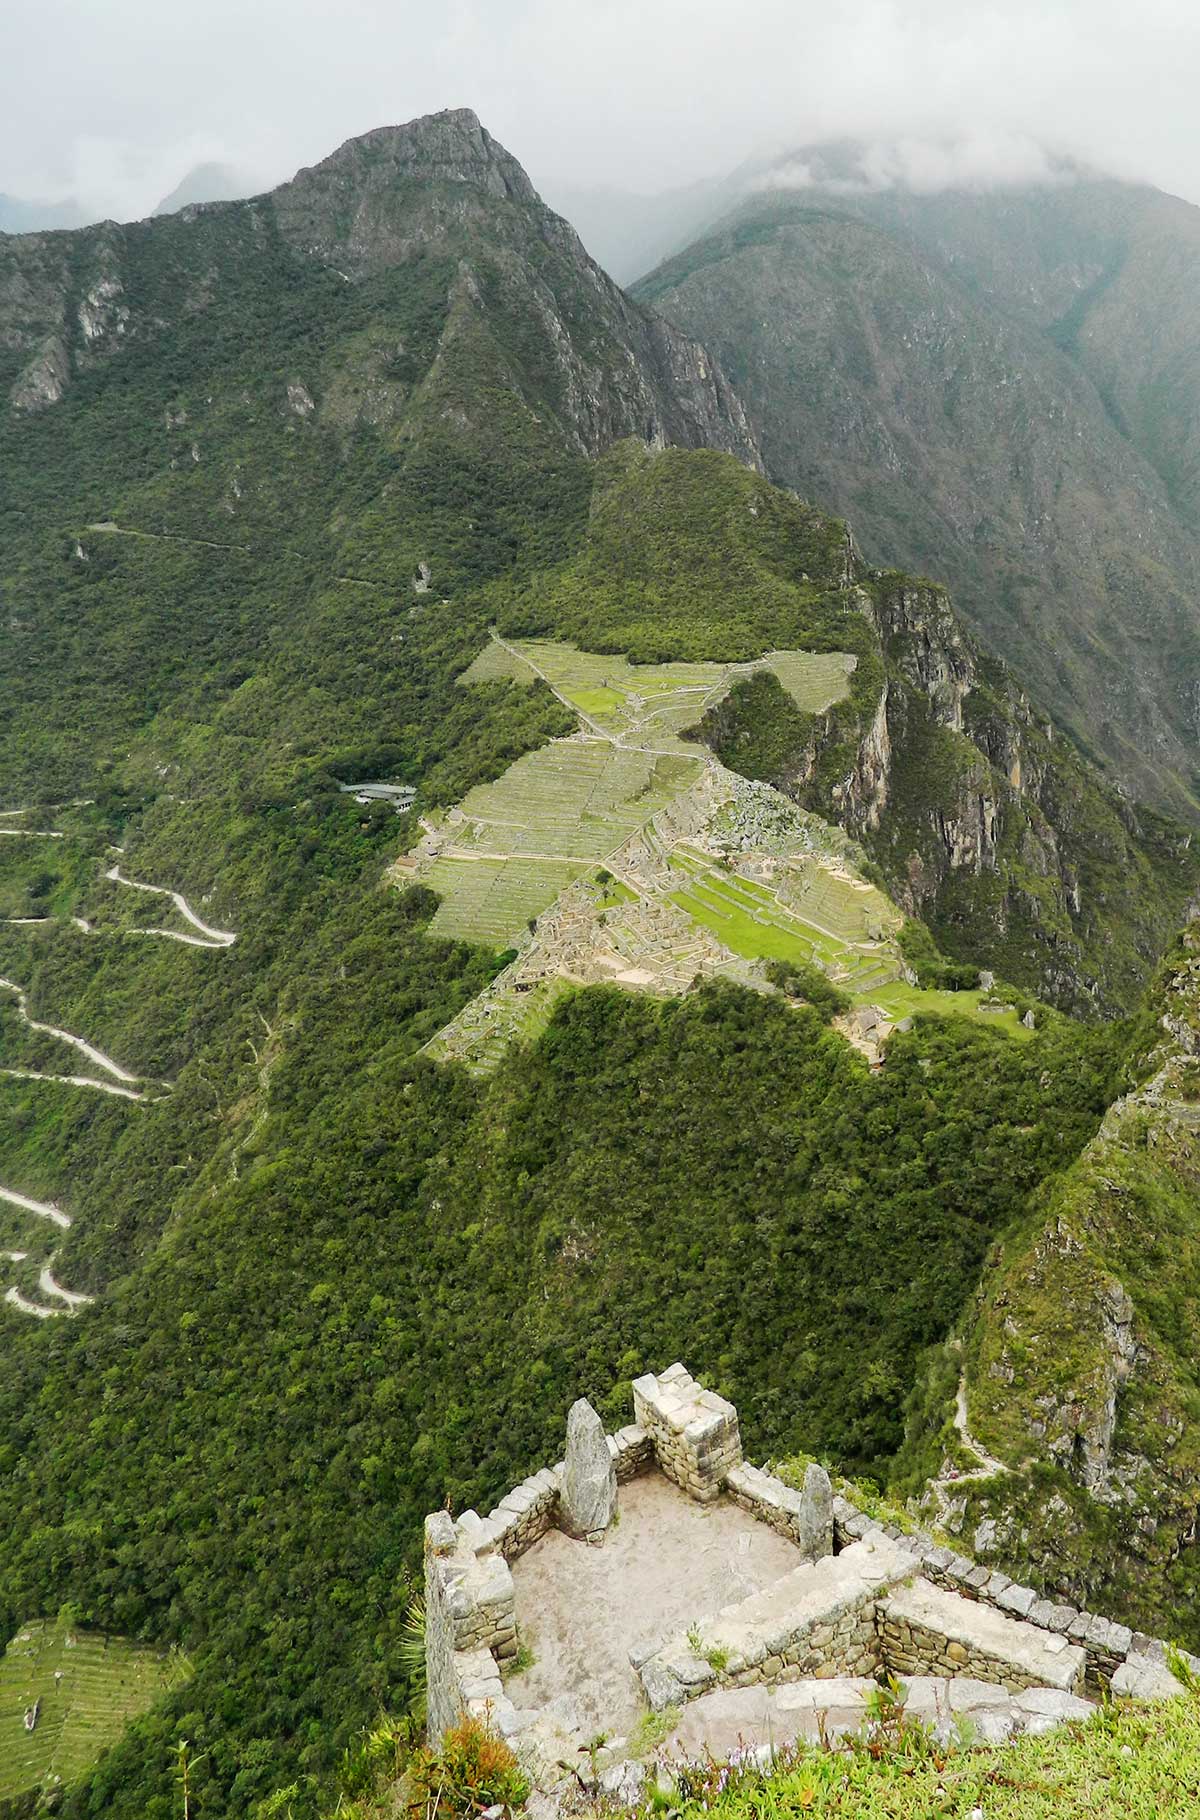 Sítio arqueológico de Machu Picchu visto do alto da Montanha Huayna Picchu